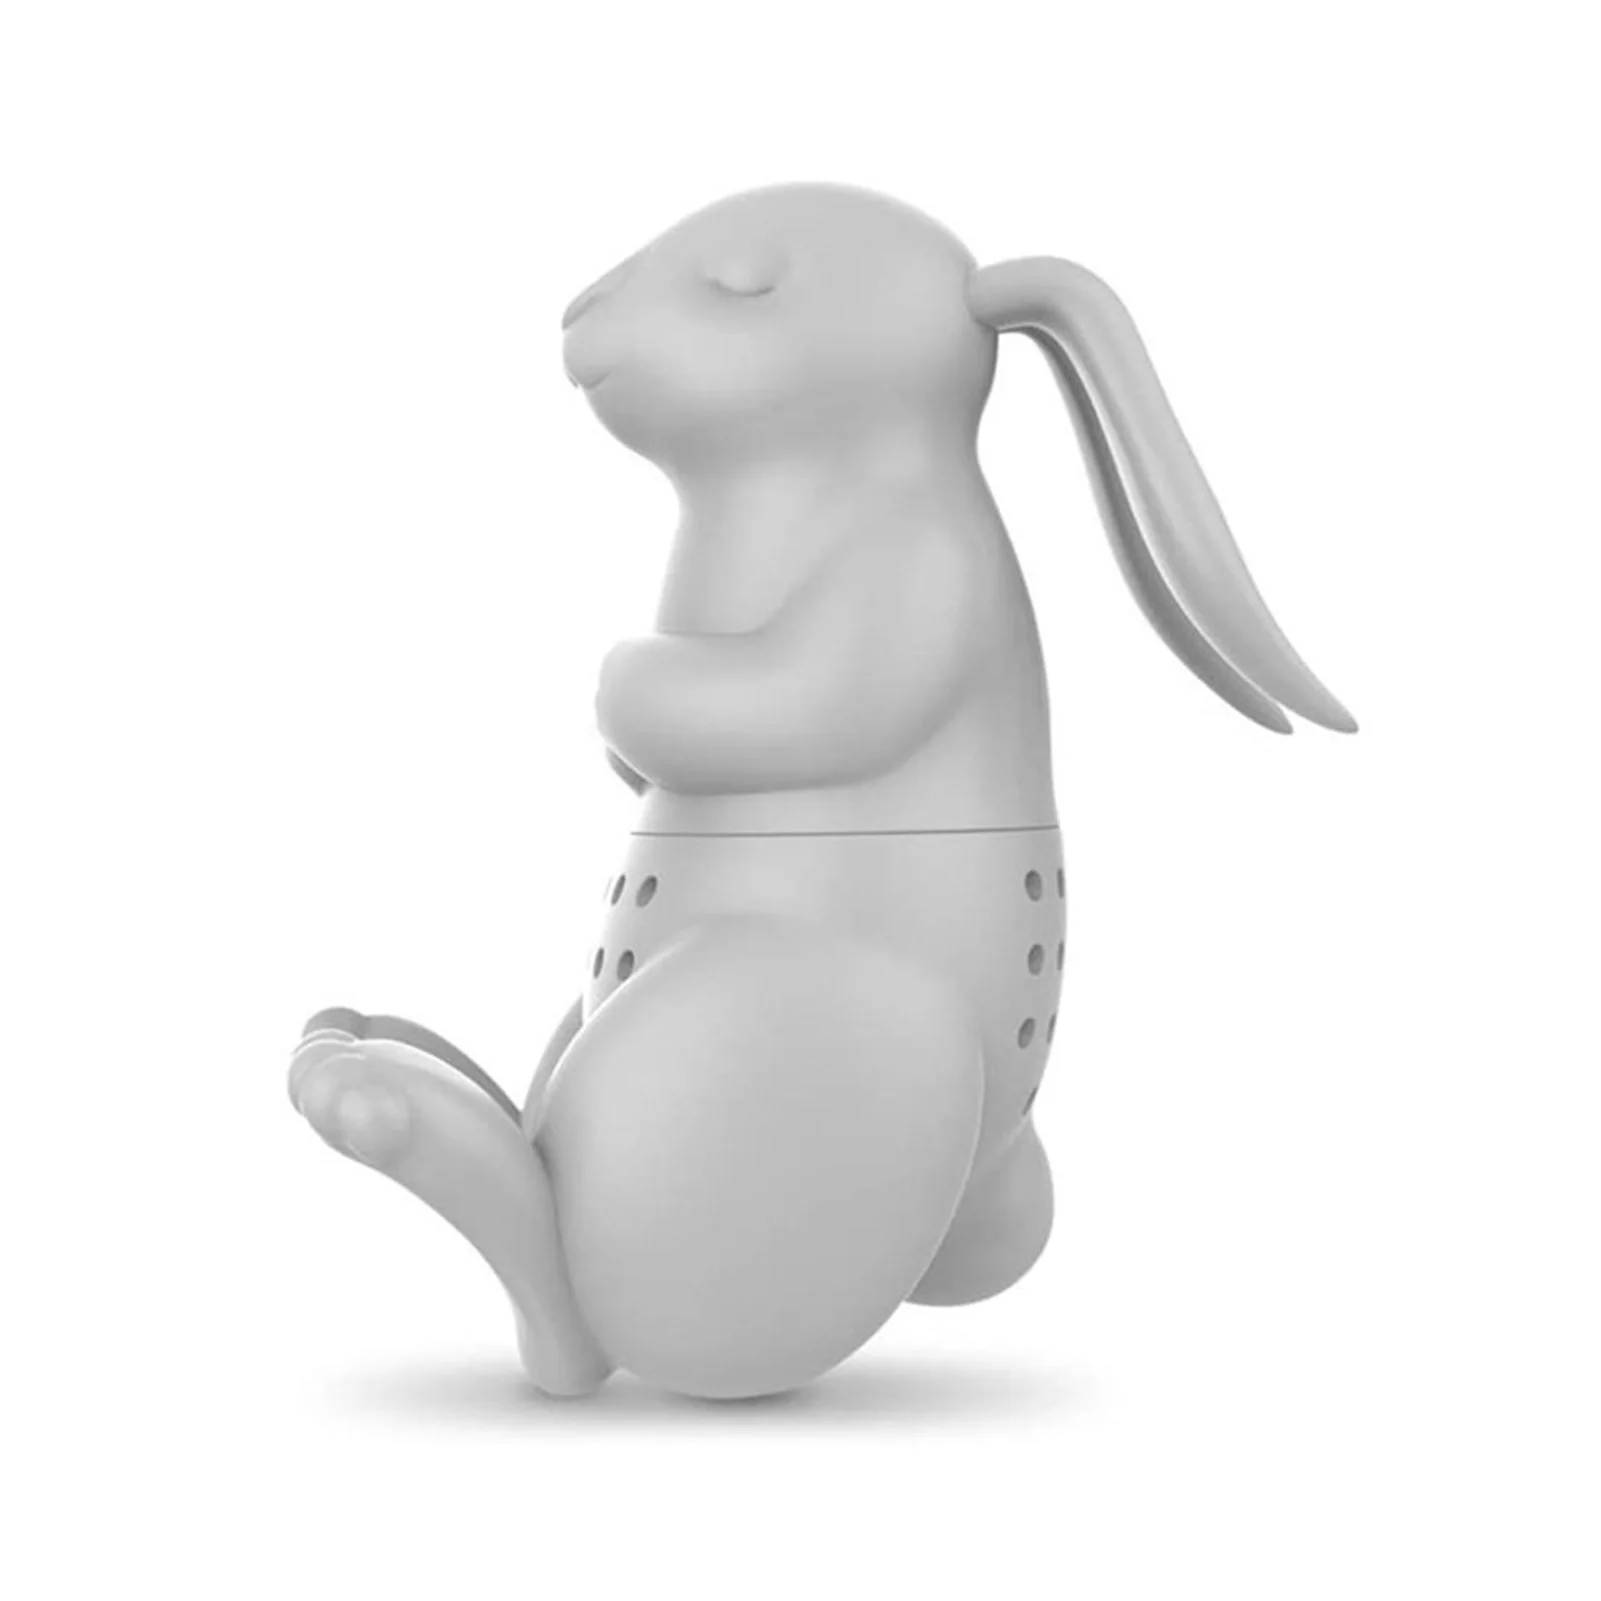 

Силиконовое ситечко для чая интересный живой партнер милый кролик ситечко с фильтром Силиконовое ситечко для заваривания чая кролик возмо...